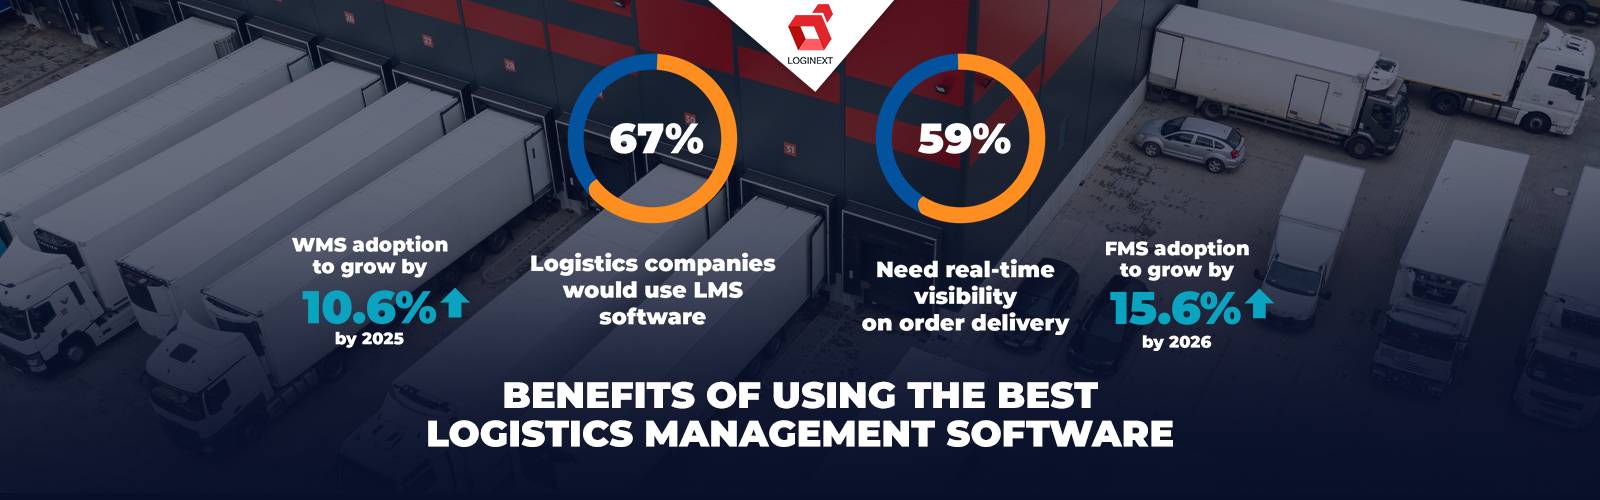 Beneficios de utilizar el mejor software de gestión logística